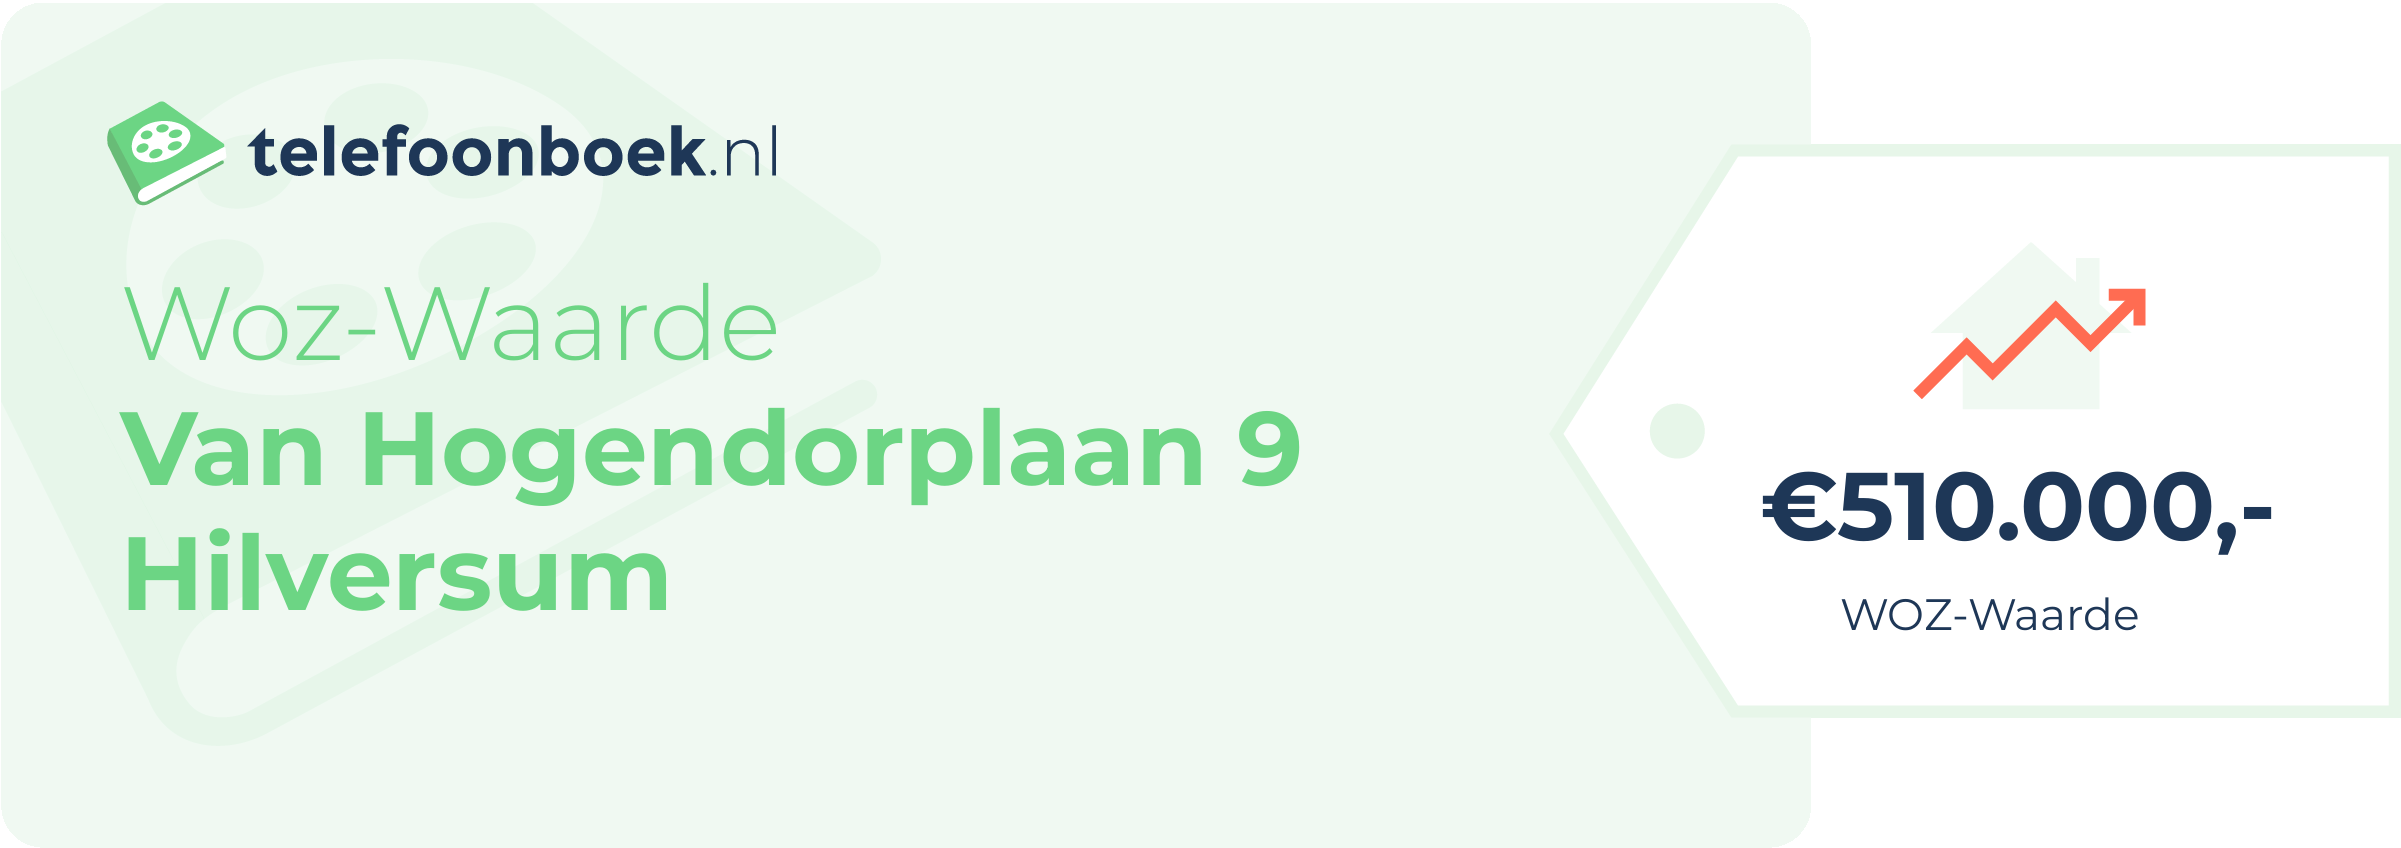 WOZ-waarde Van Hogendorplaan 9 Hilversum